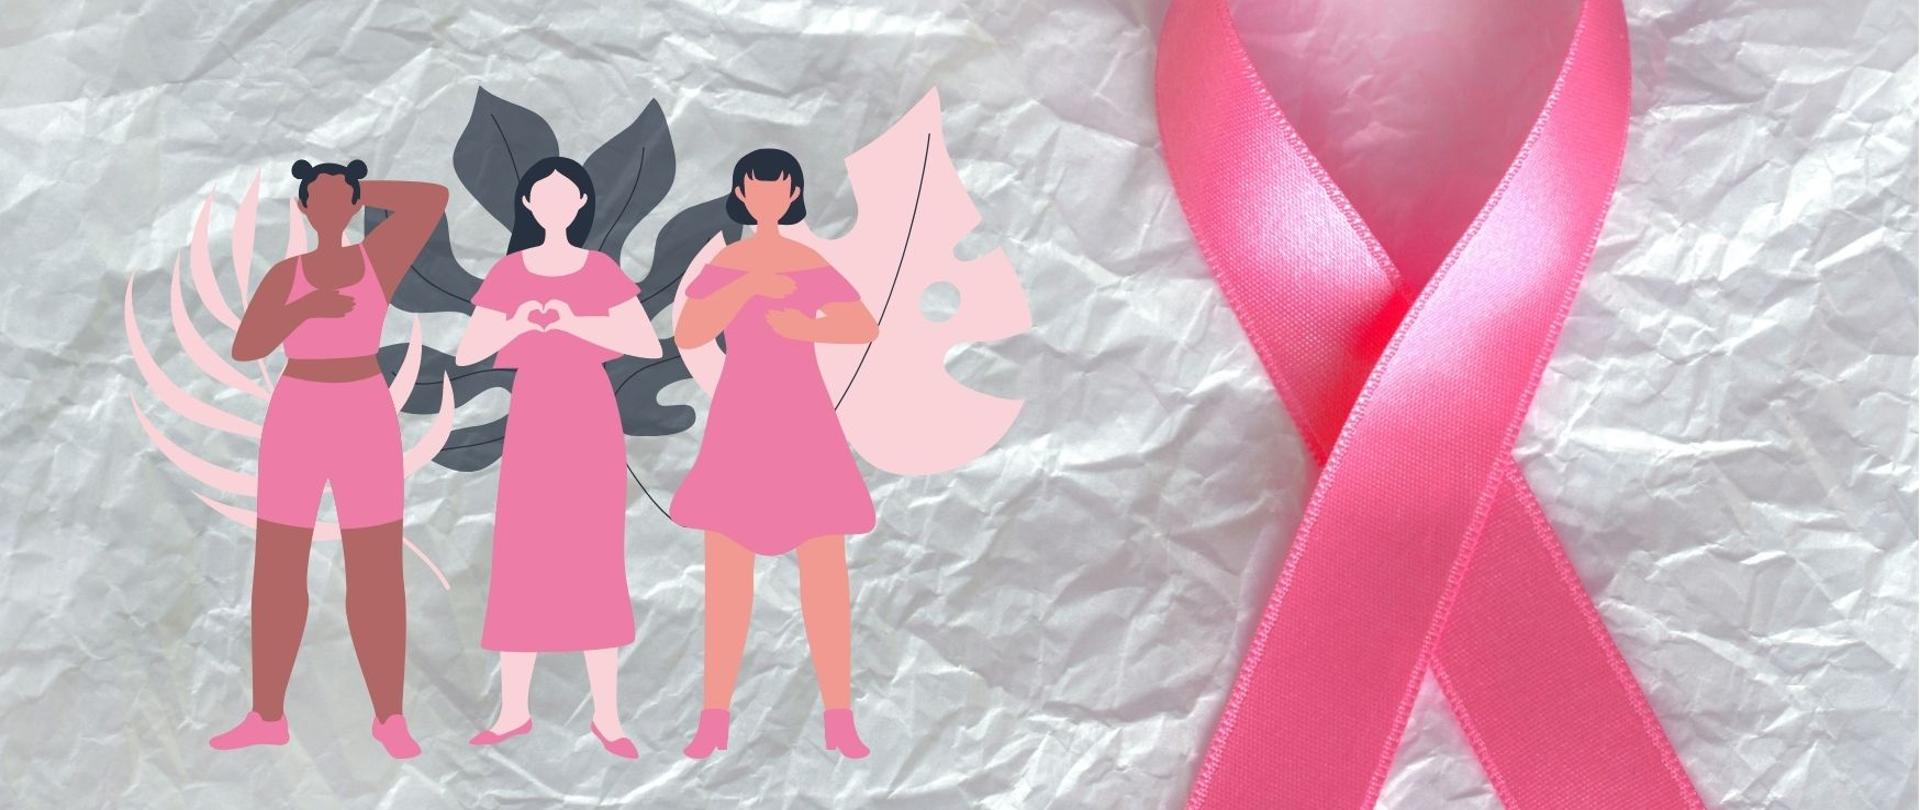 rysunek trzech kobiet i zdjęcie różowej wstążki będącej symbolem walki z rakiem piersi